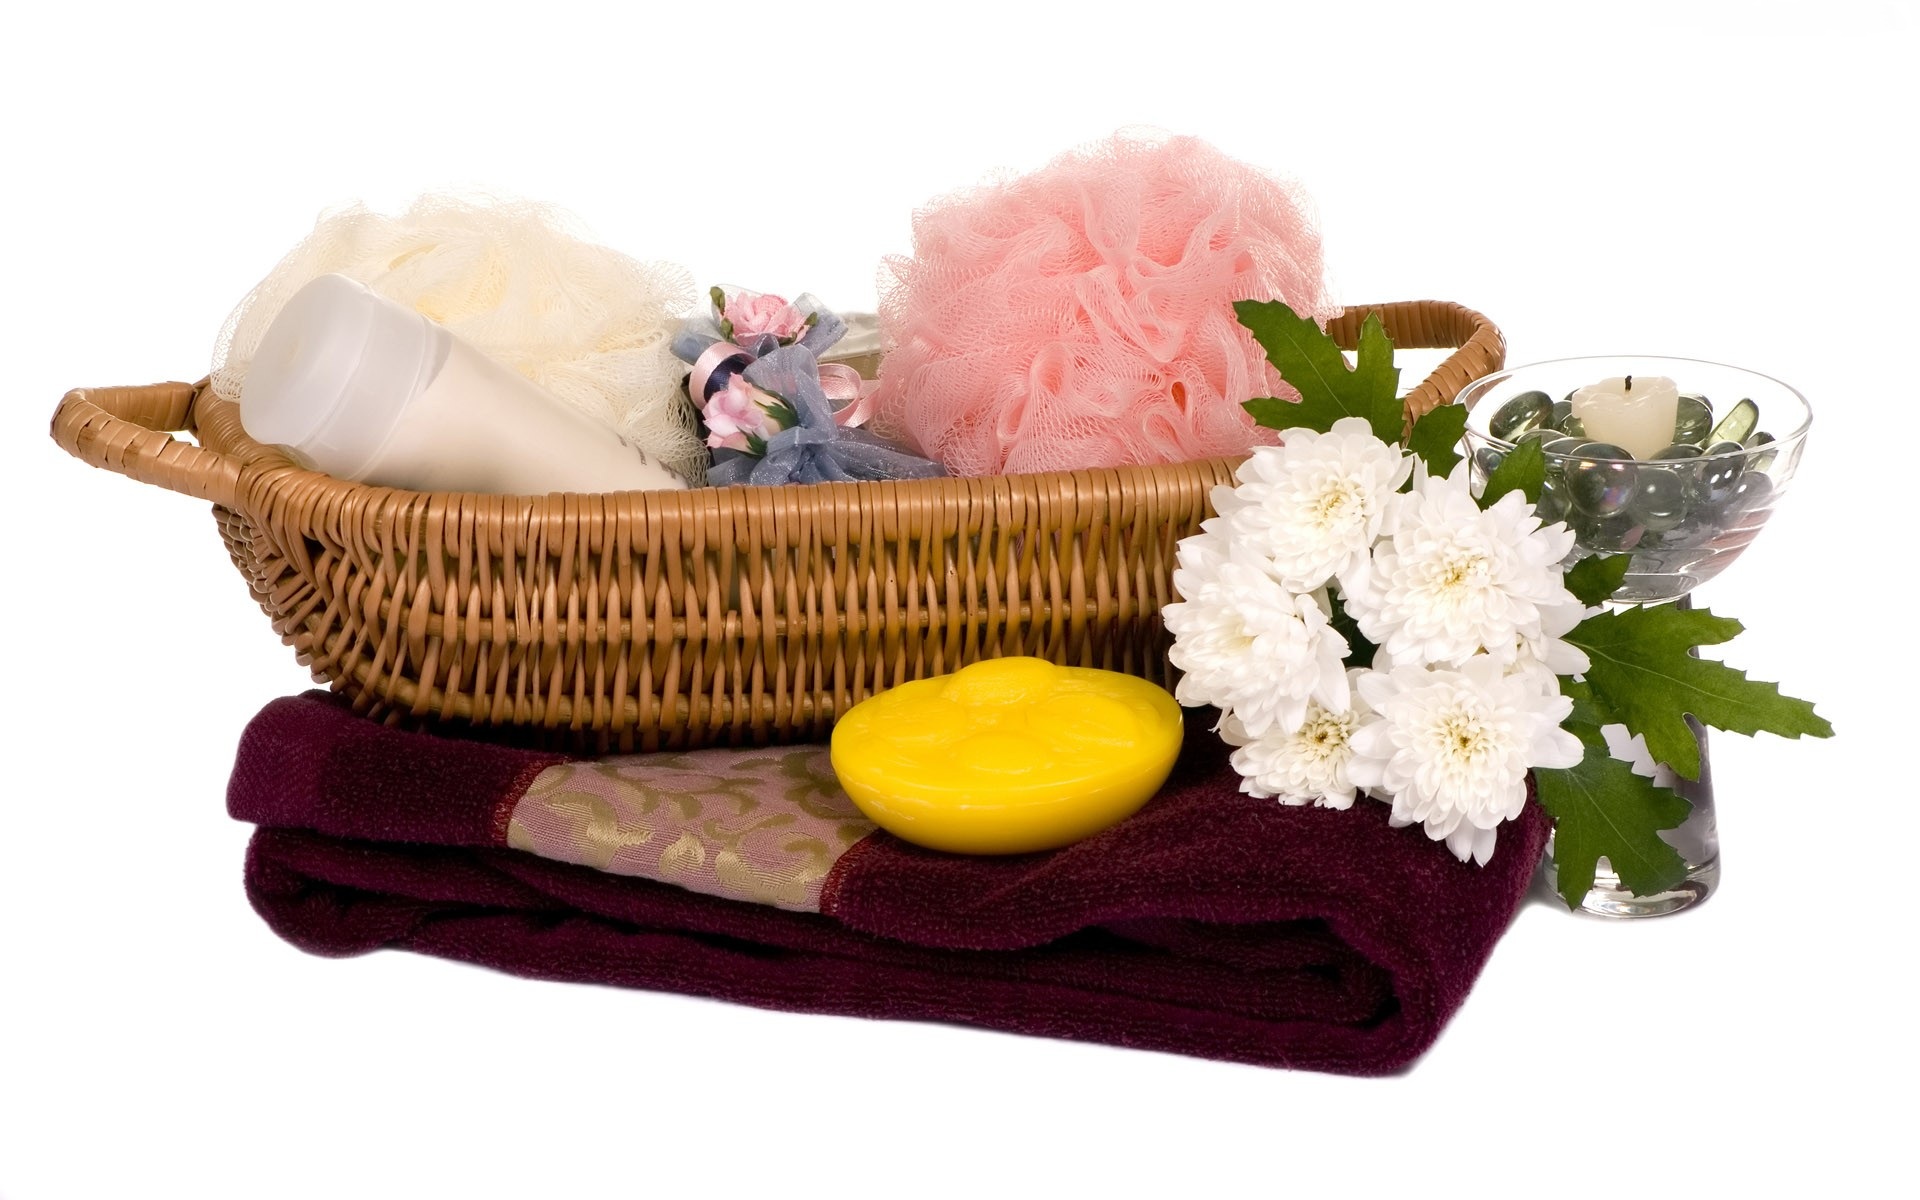 man made, spa, basket, flower, still life, towel 32K